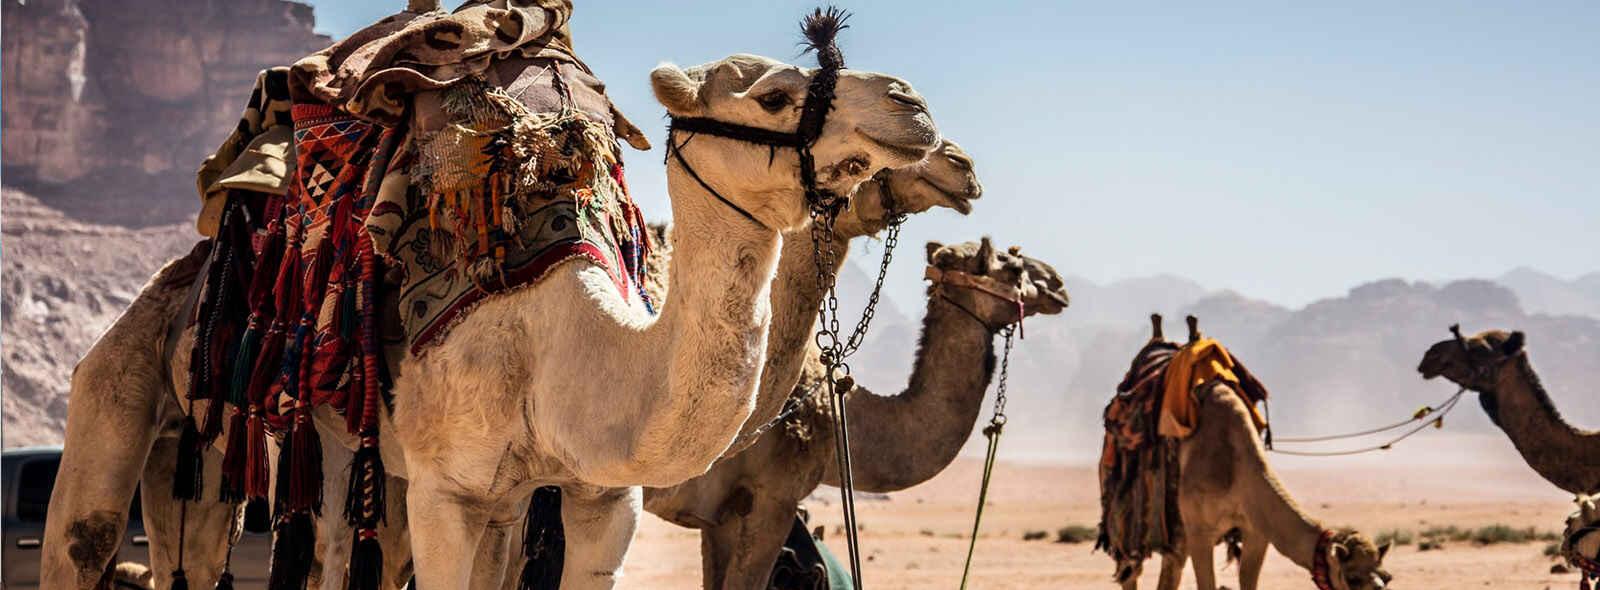 kamelen bij drinkbak in wadi rum